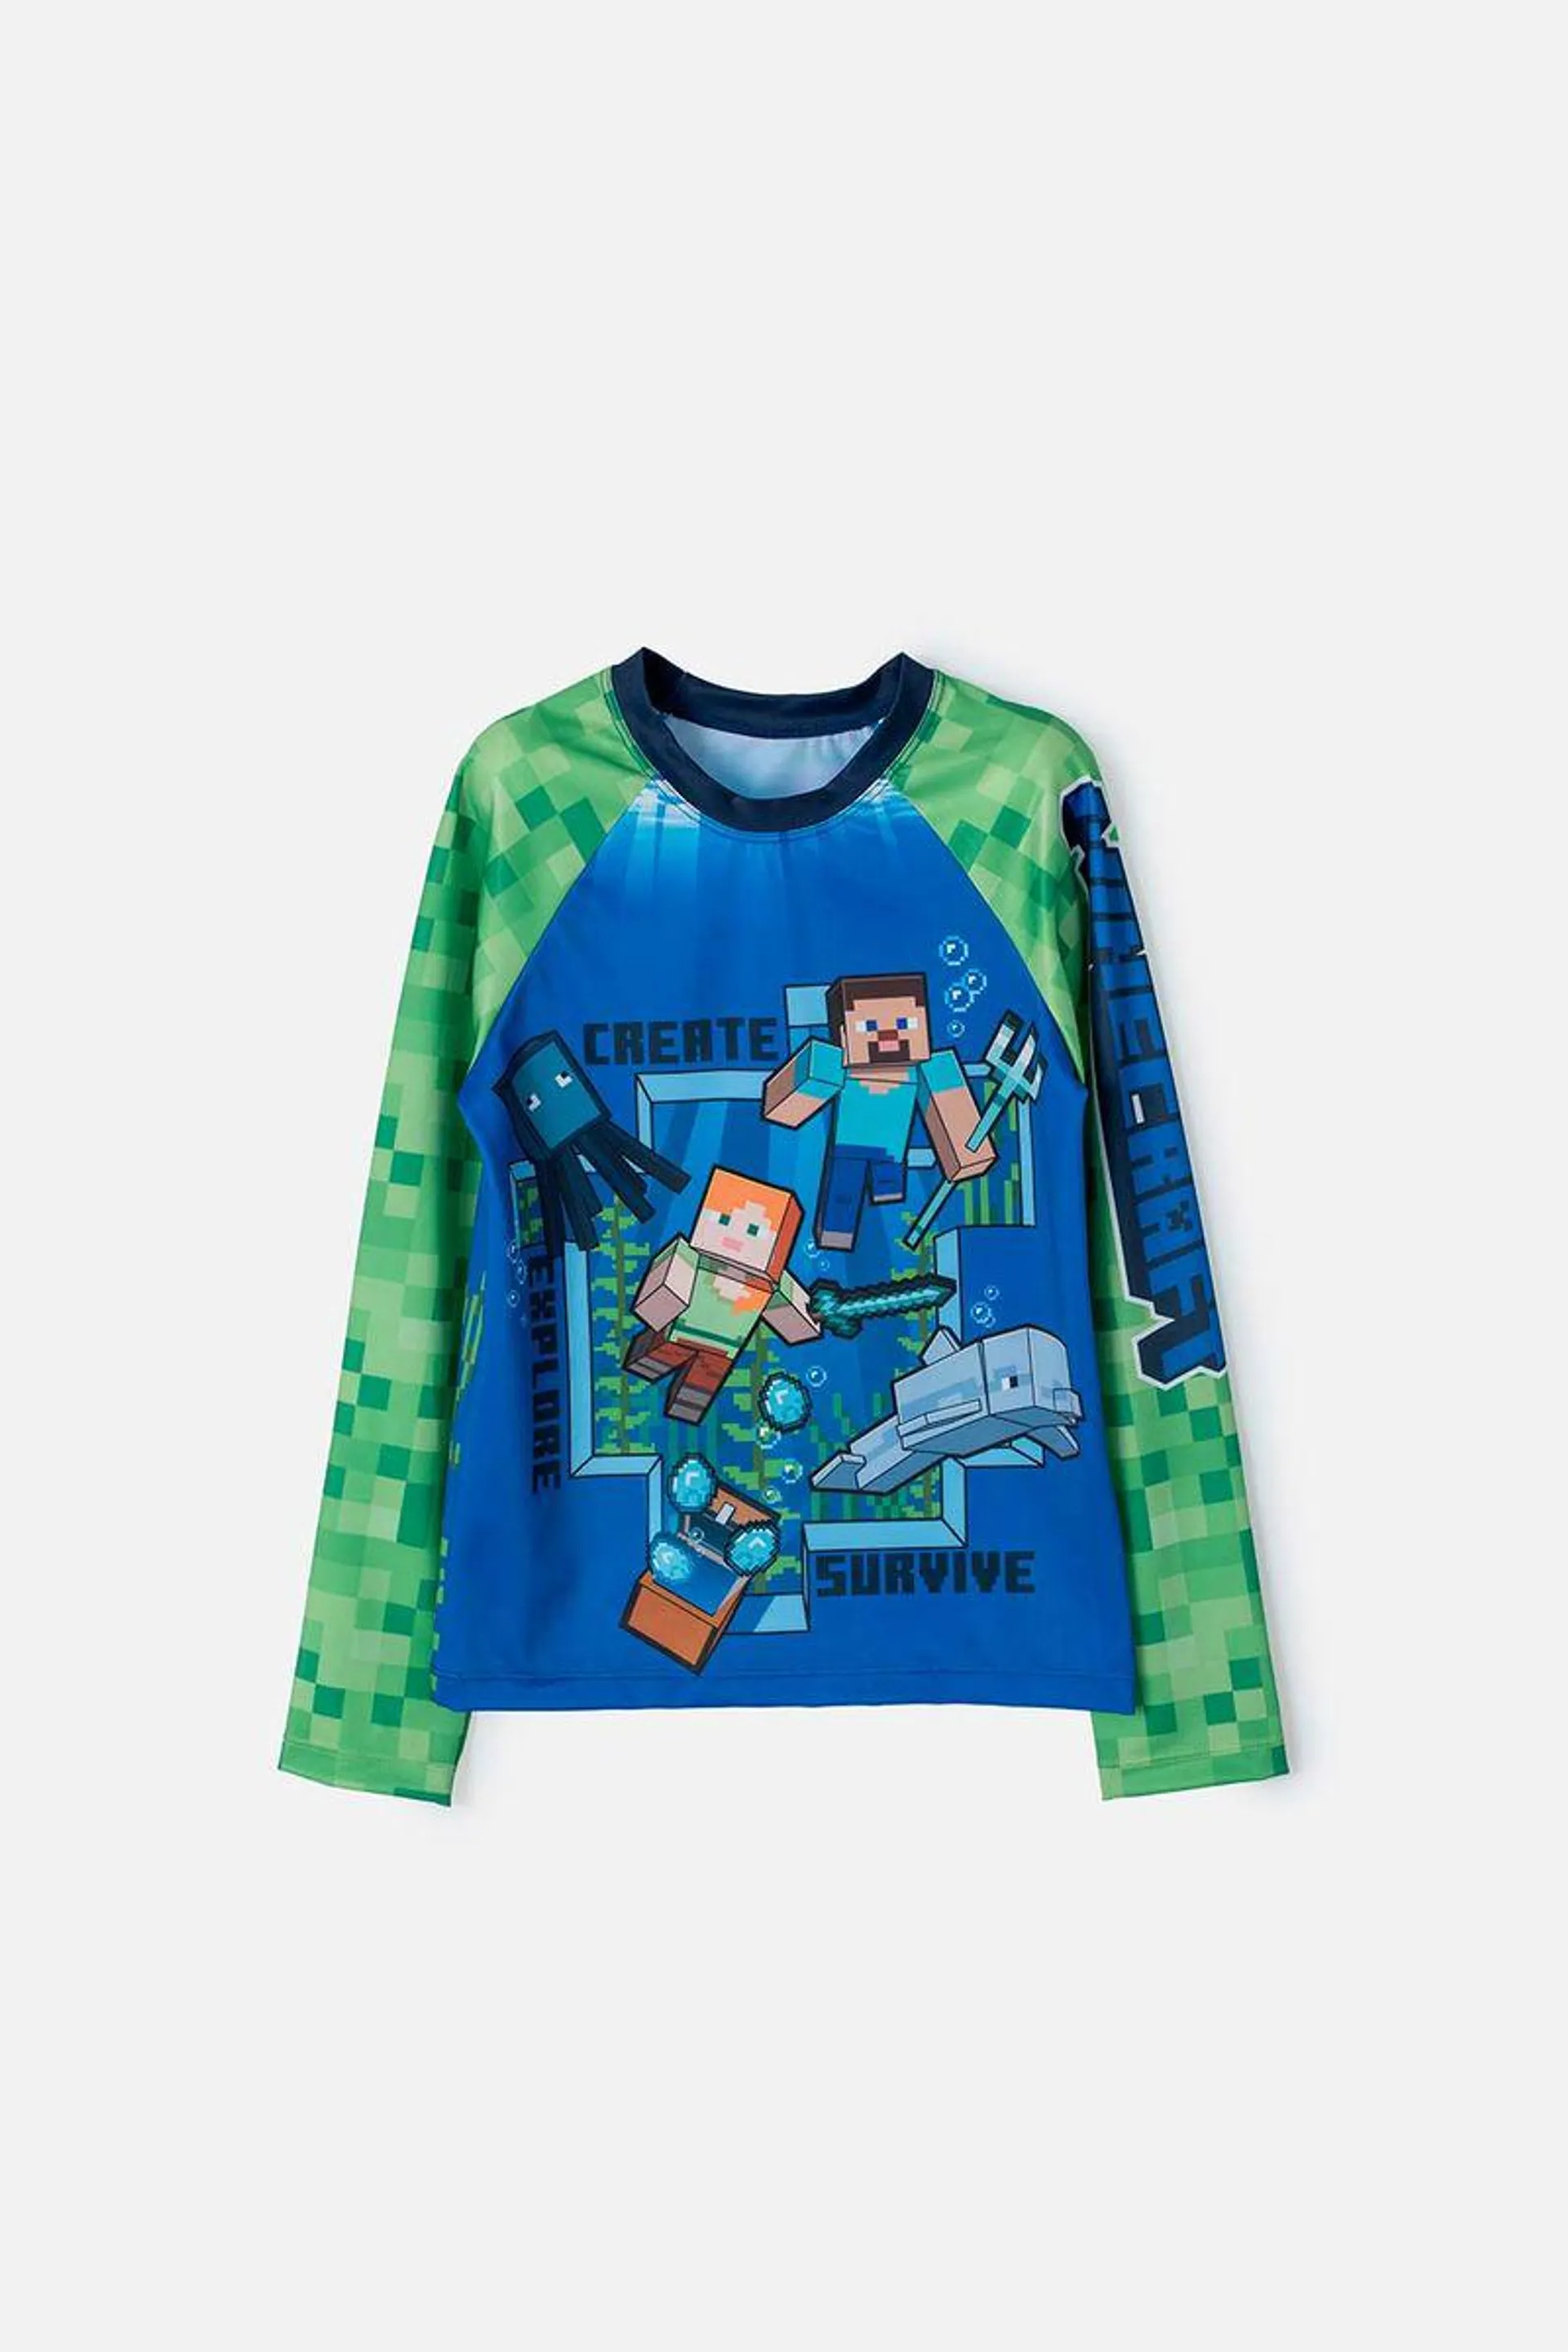 Camiseta de baño de Minecraft verde y azul manga larga para niño